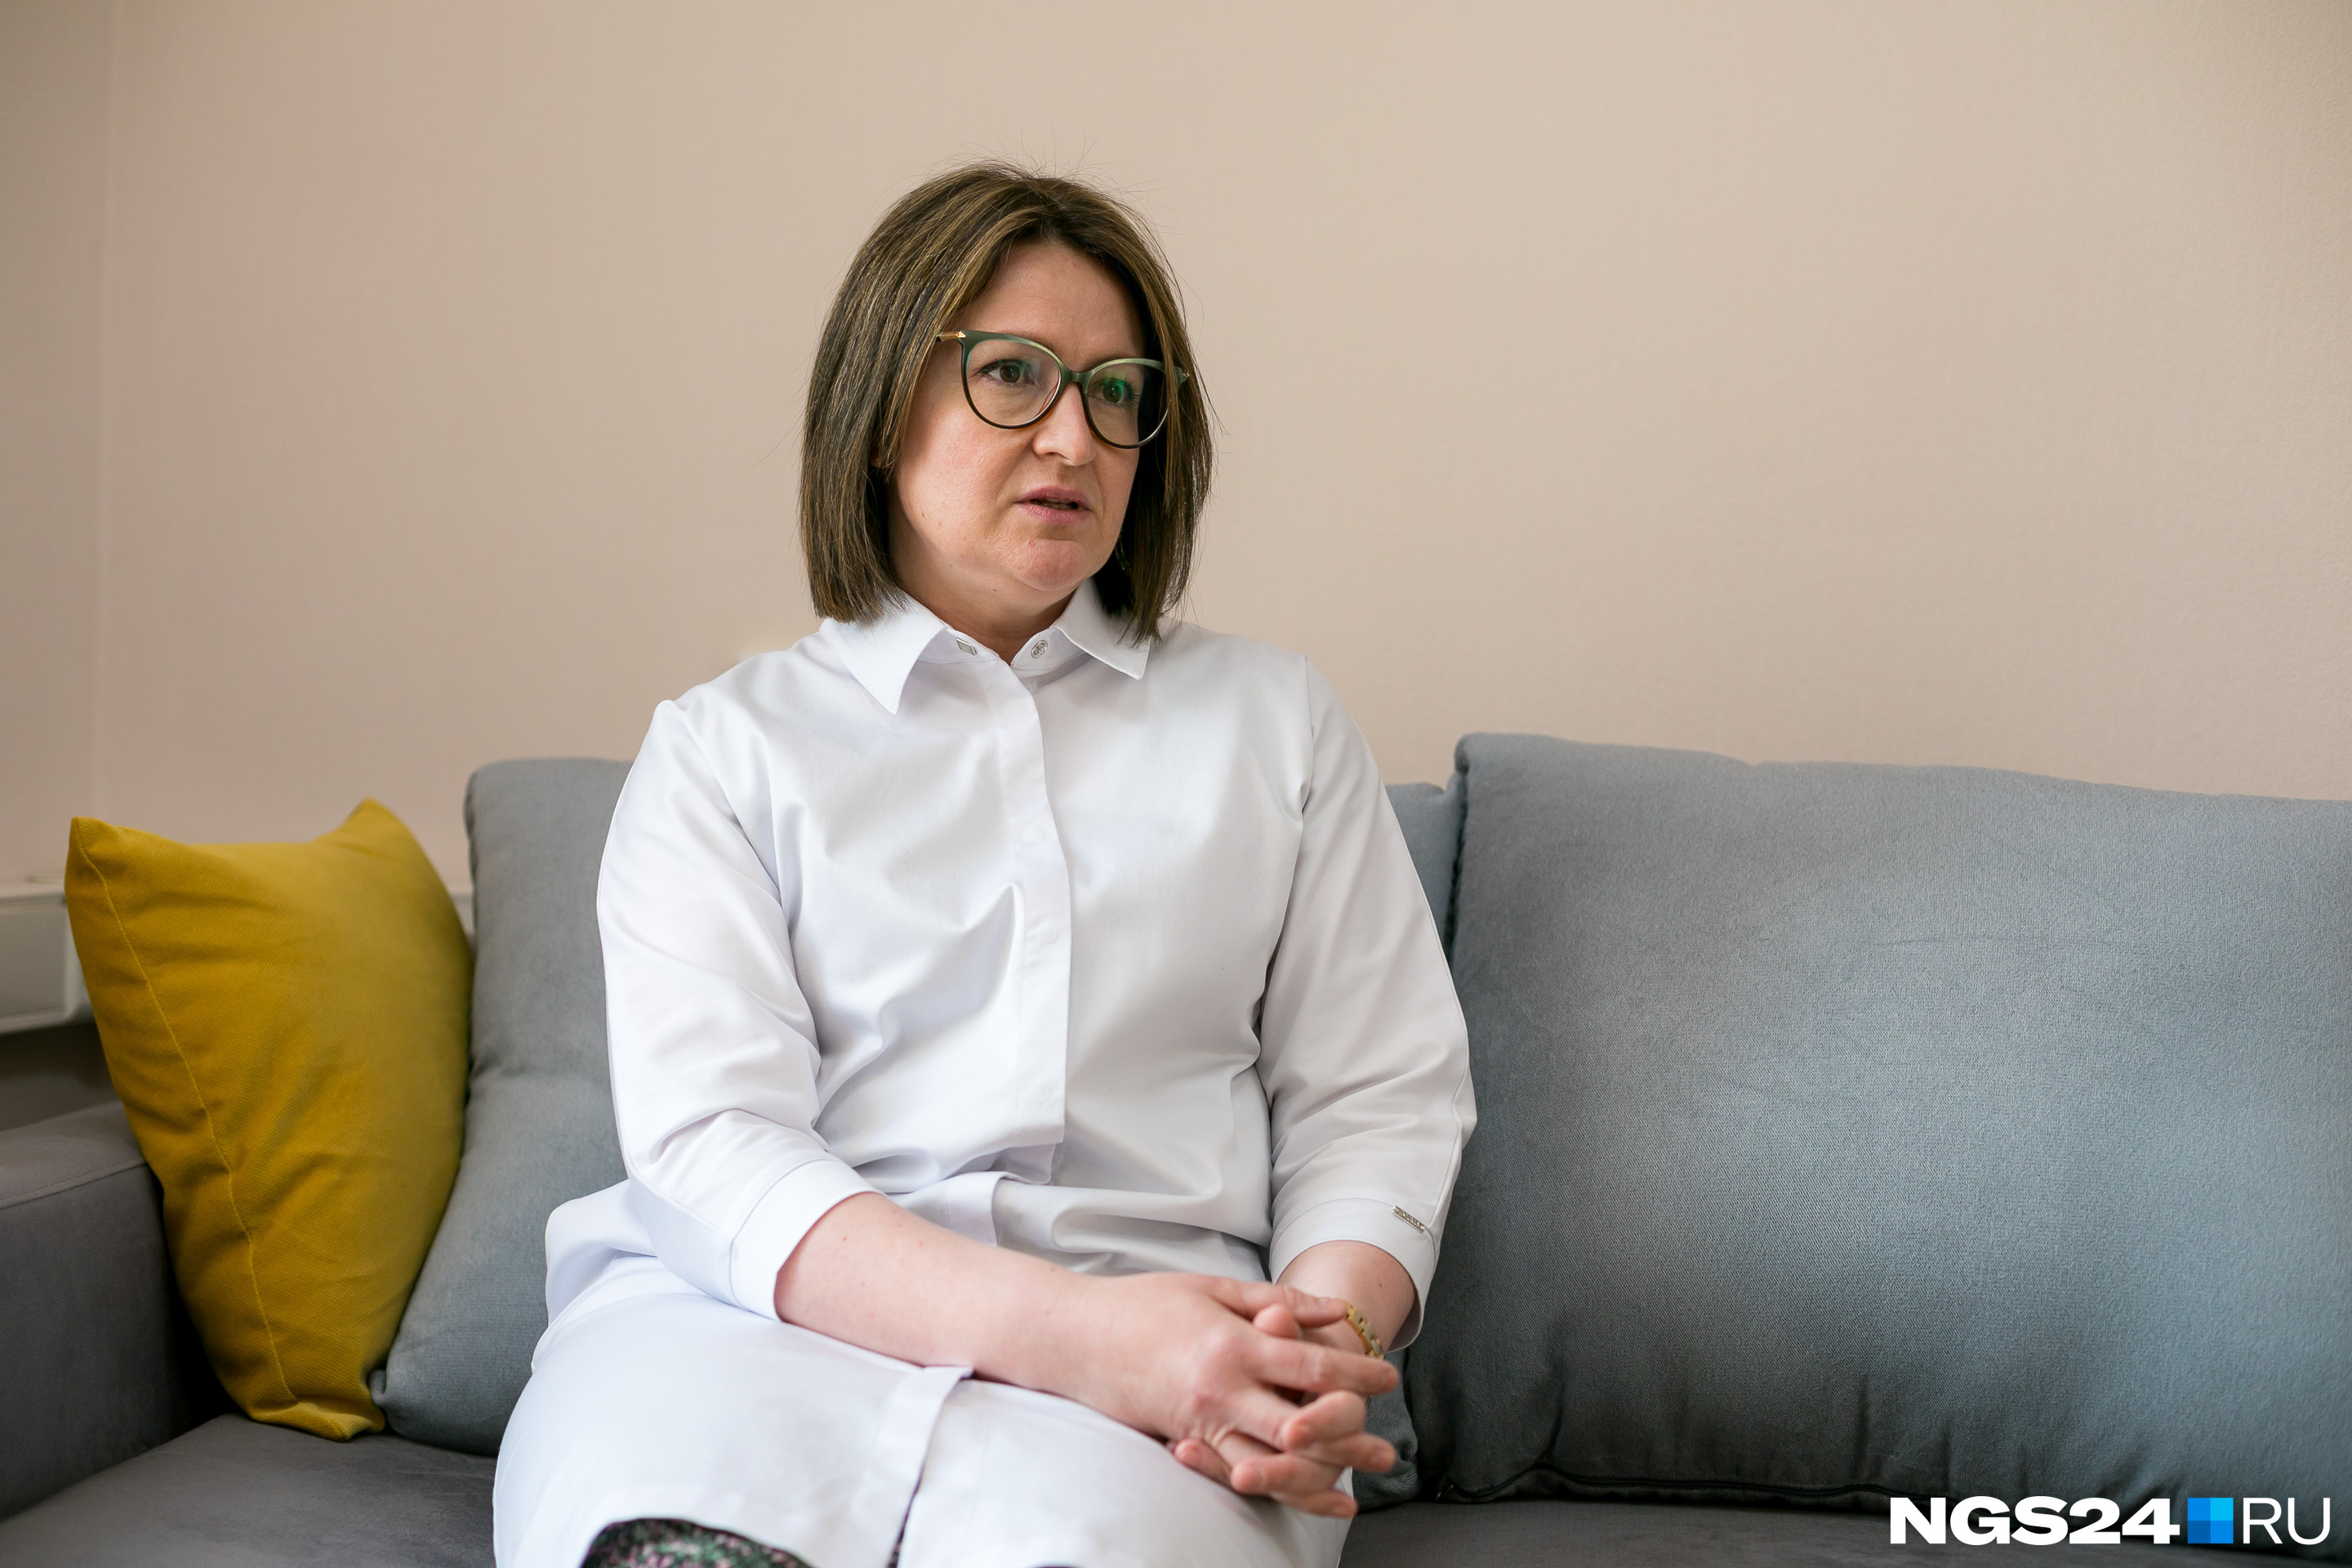 Ольга Воронова рассказала, что заранее предупредила родных, что придется зайти на смену в ковид-госпиталь и не видеться неделями